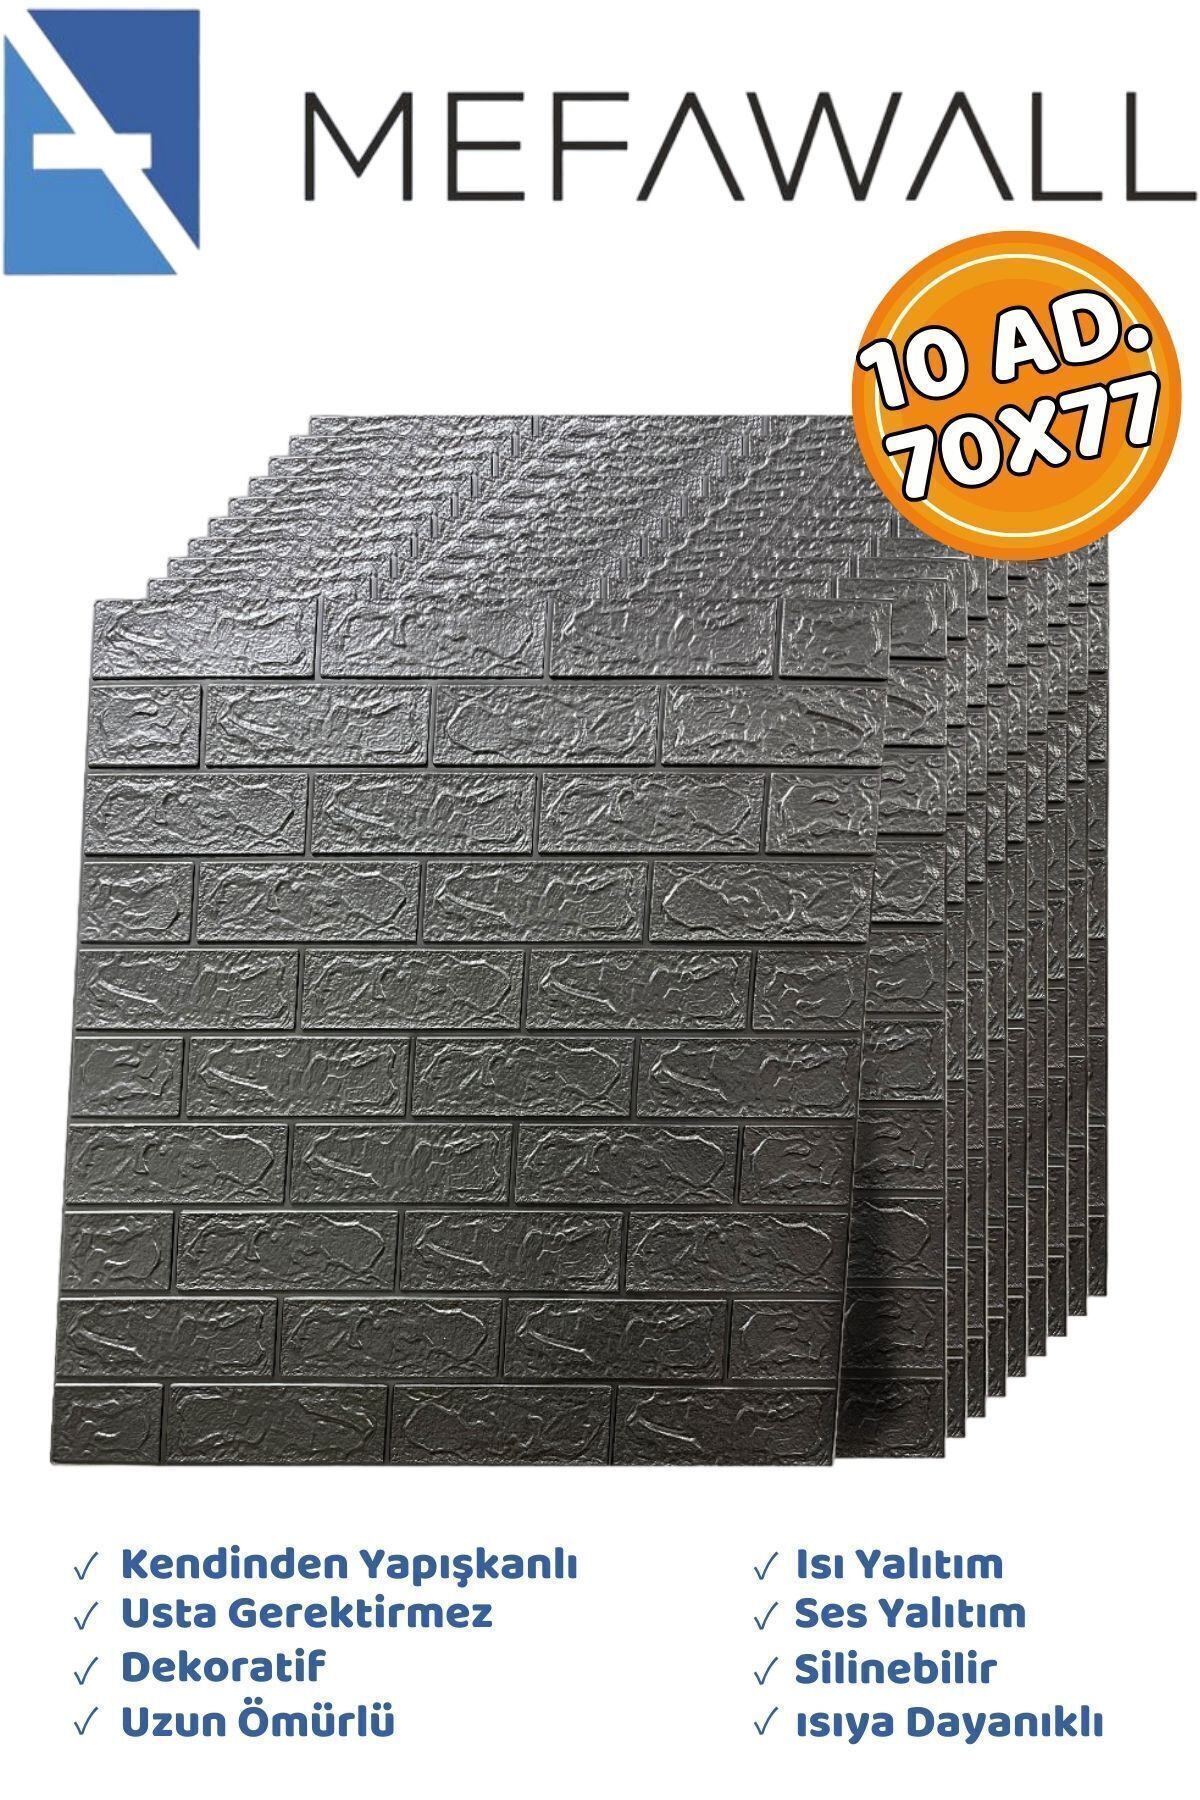 Mefawall 70x77 Cm 10 Adet- Kendinden Yapışkanlı Duvar Kağıdı Esnek Köpük Paneli 3d Boyutlu Tuğla Desen Gri